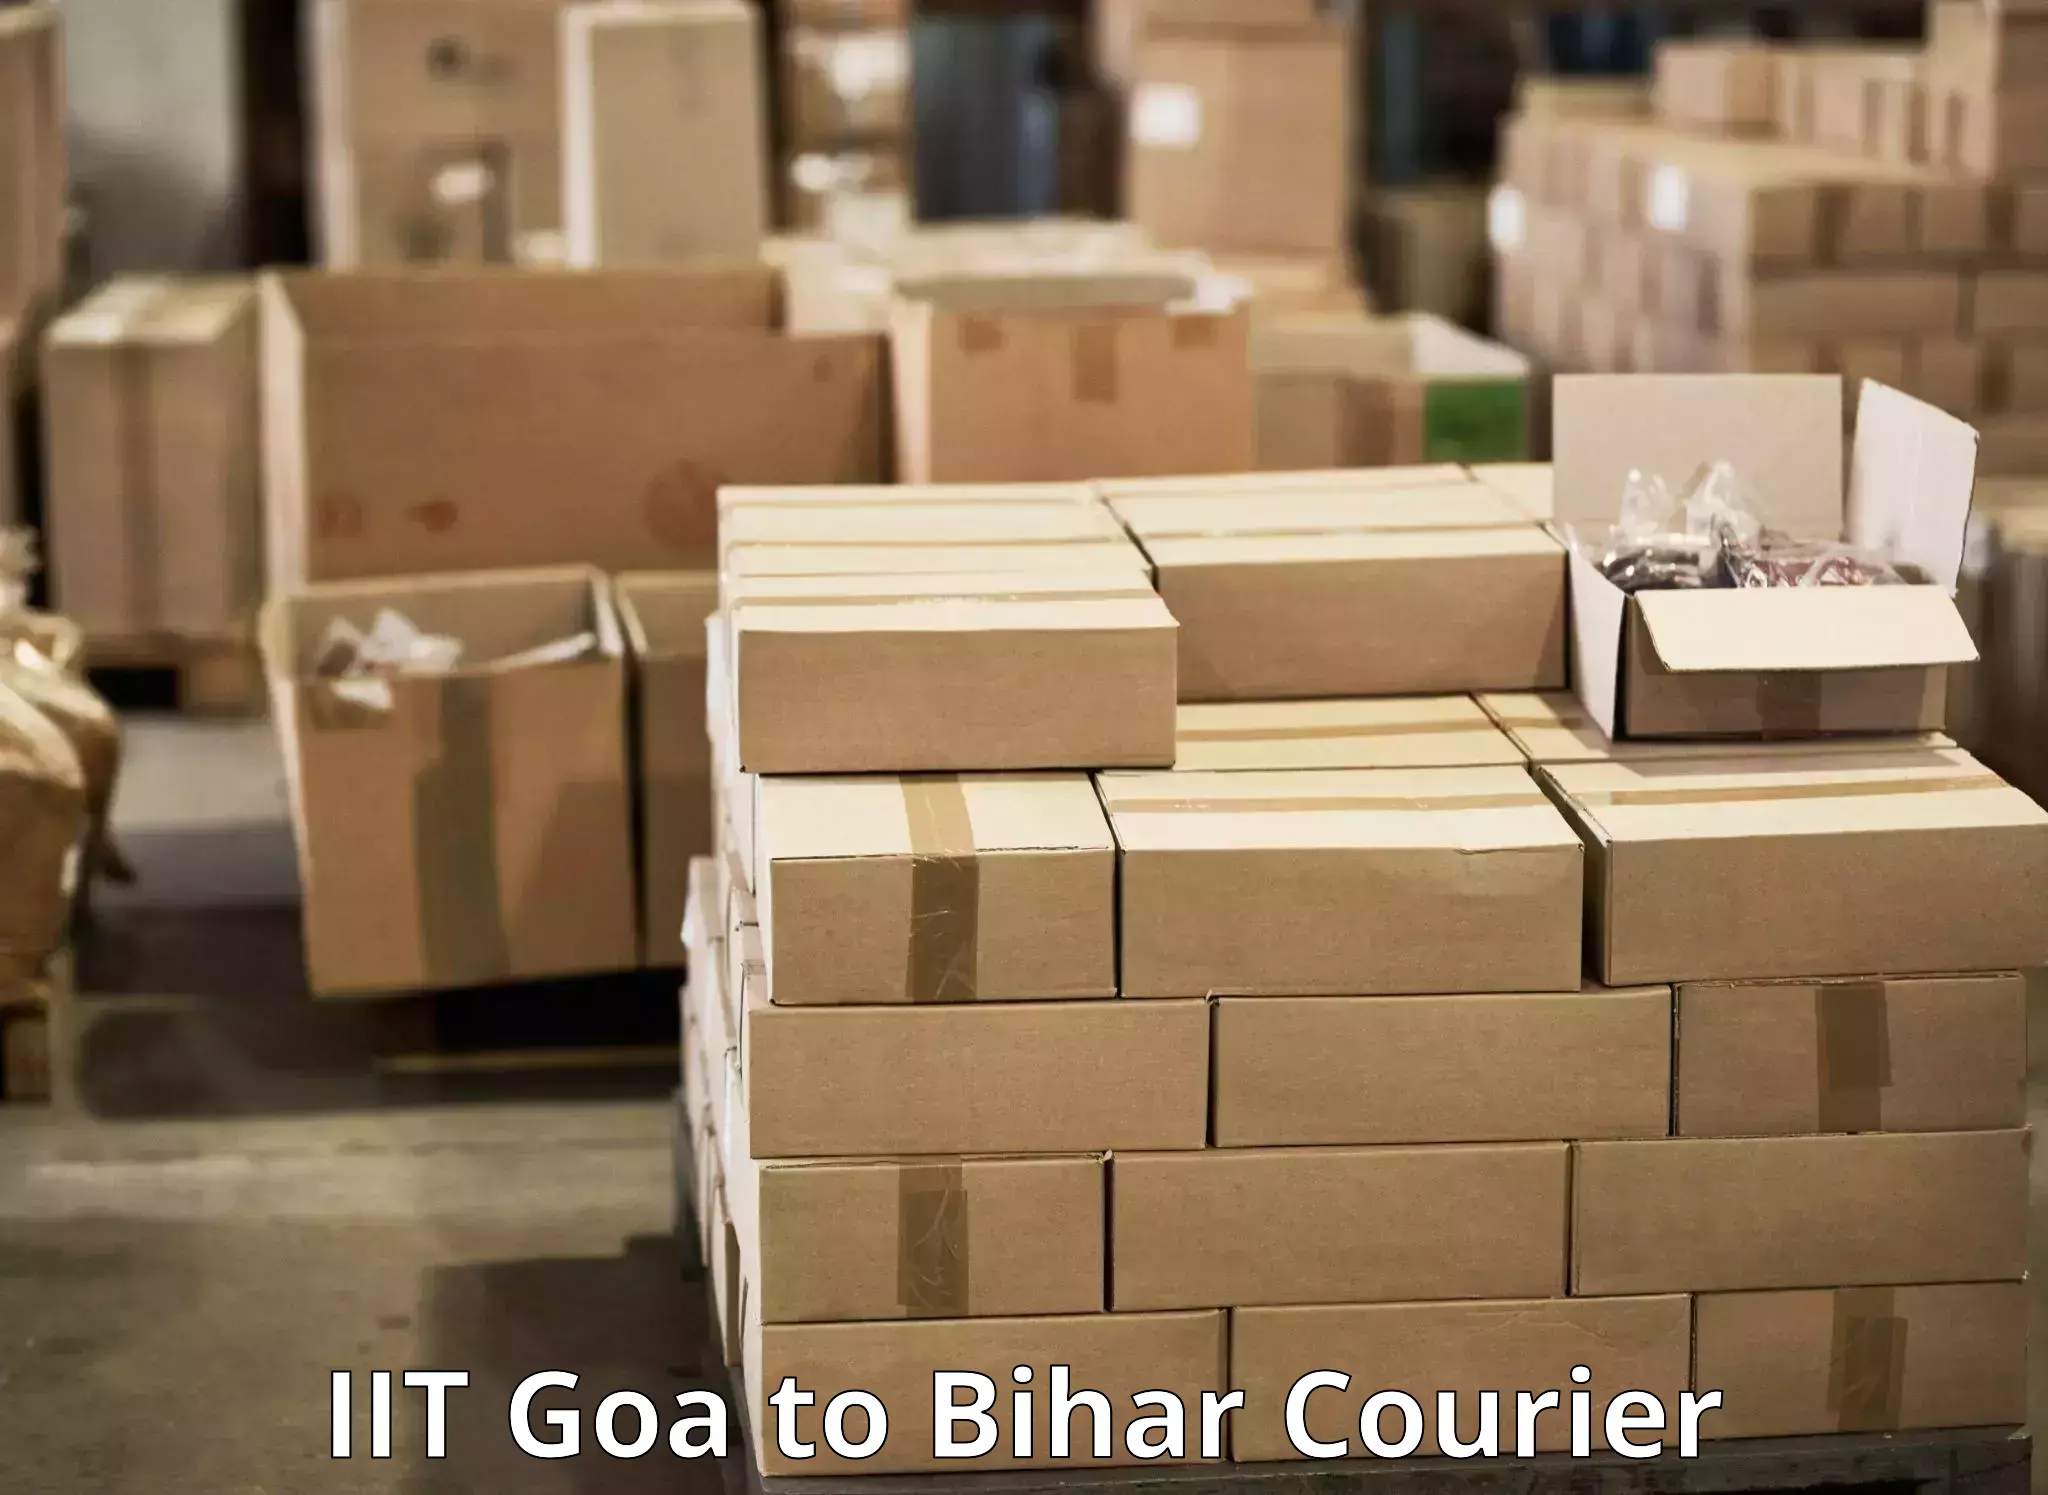 E-commerce fulfillment in IIT Goa to Dhaka